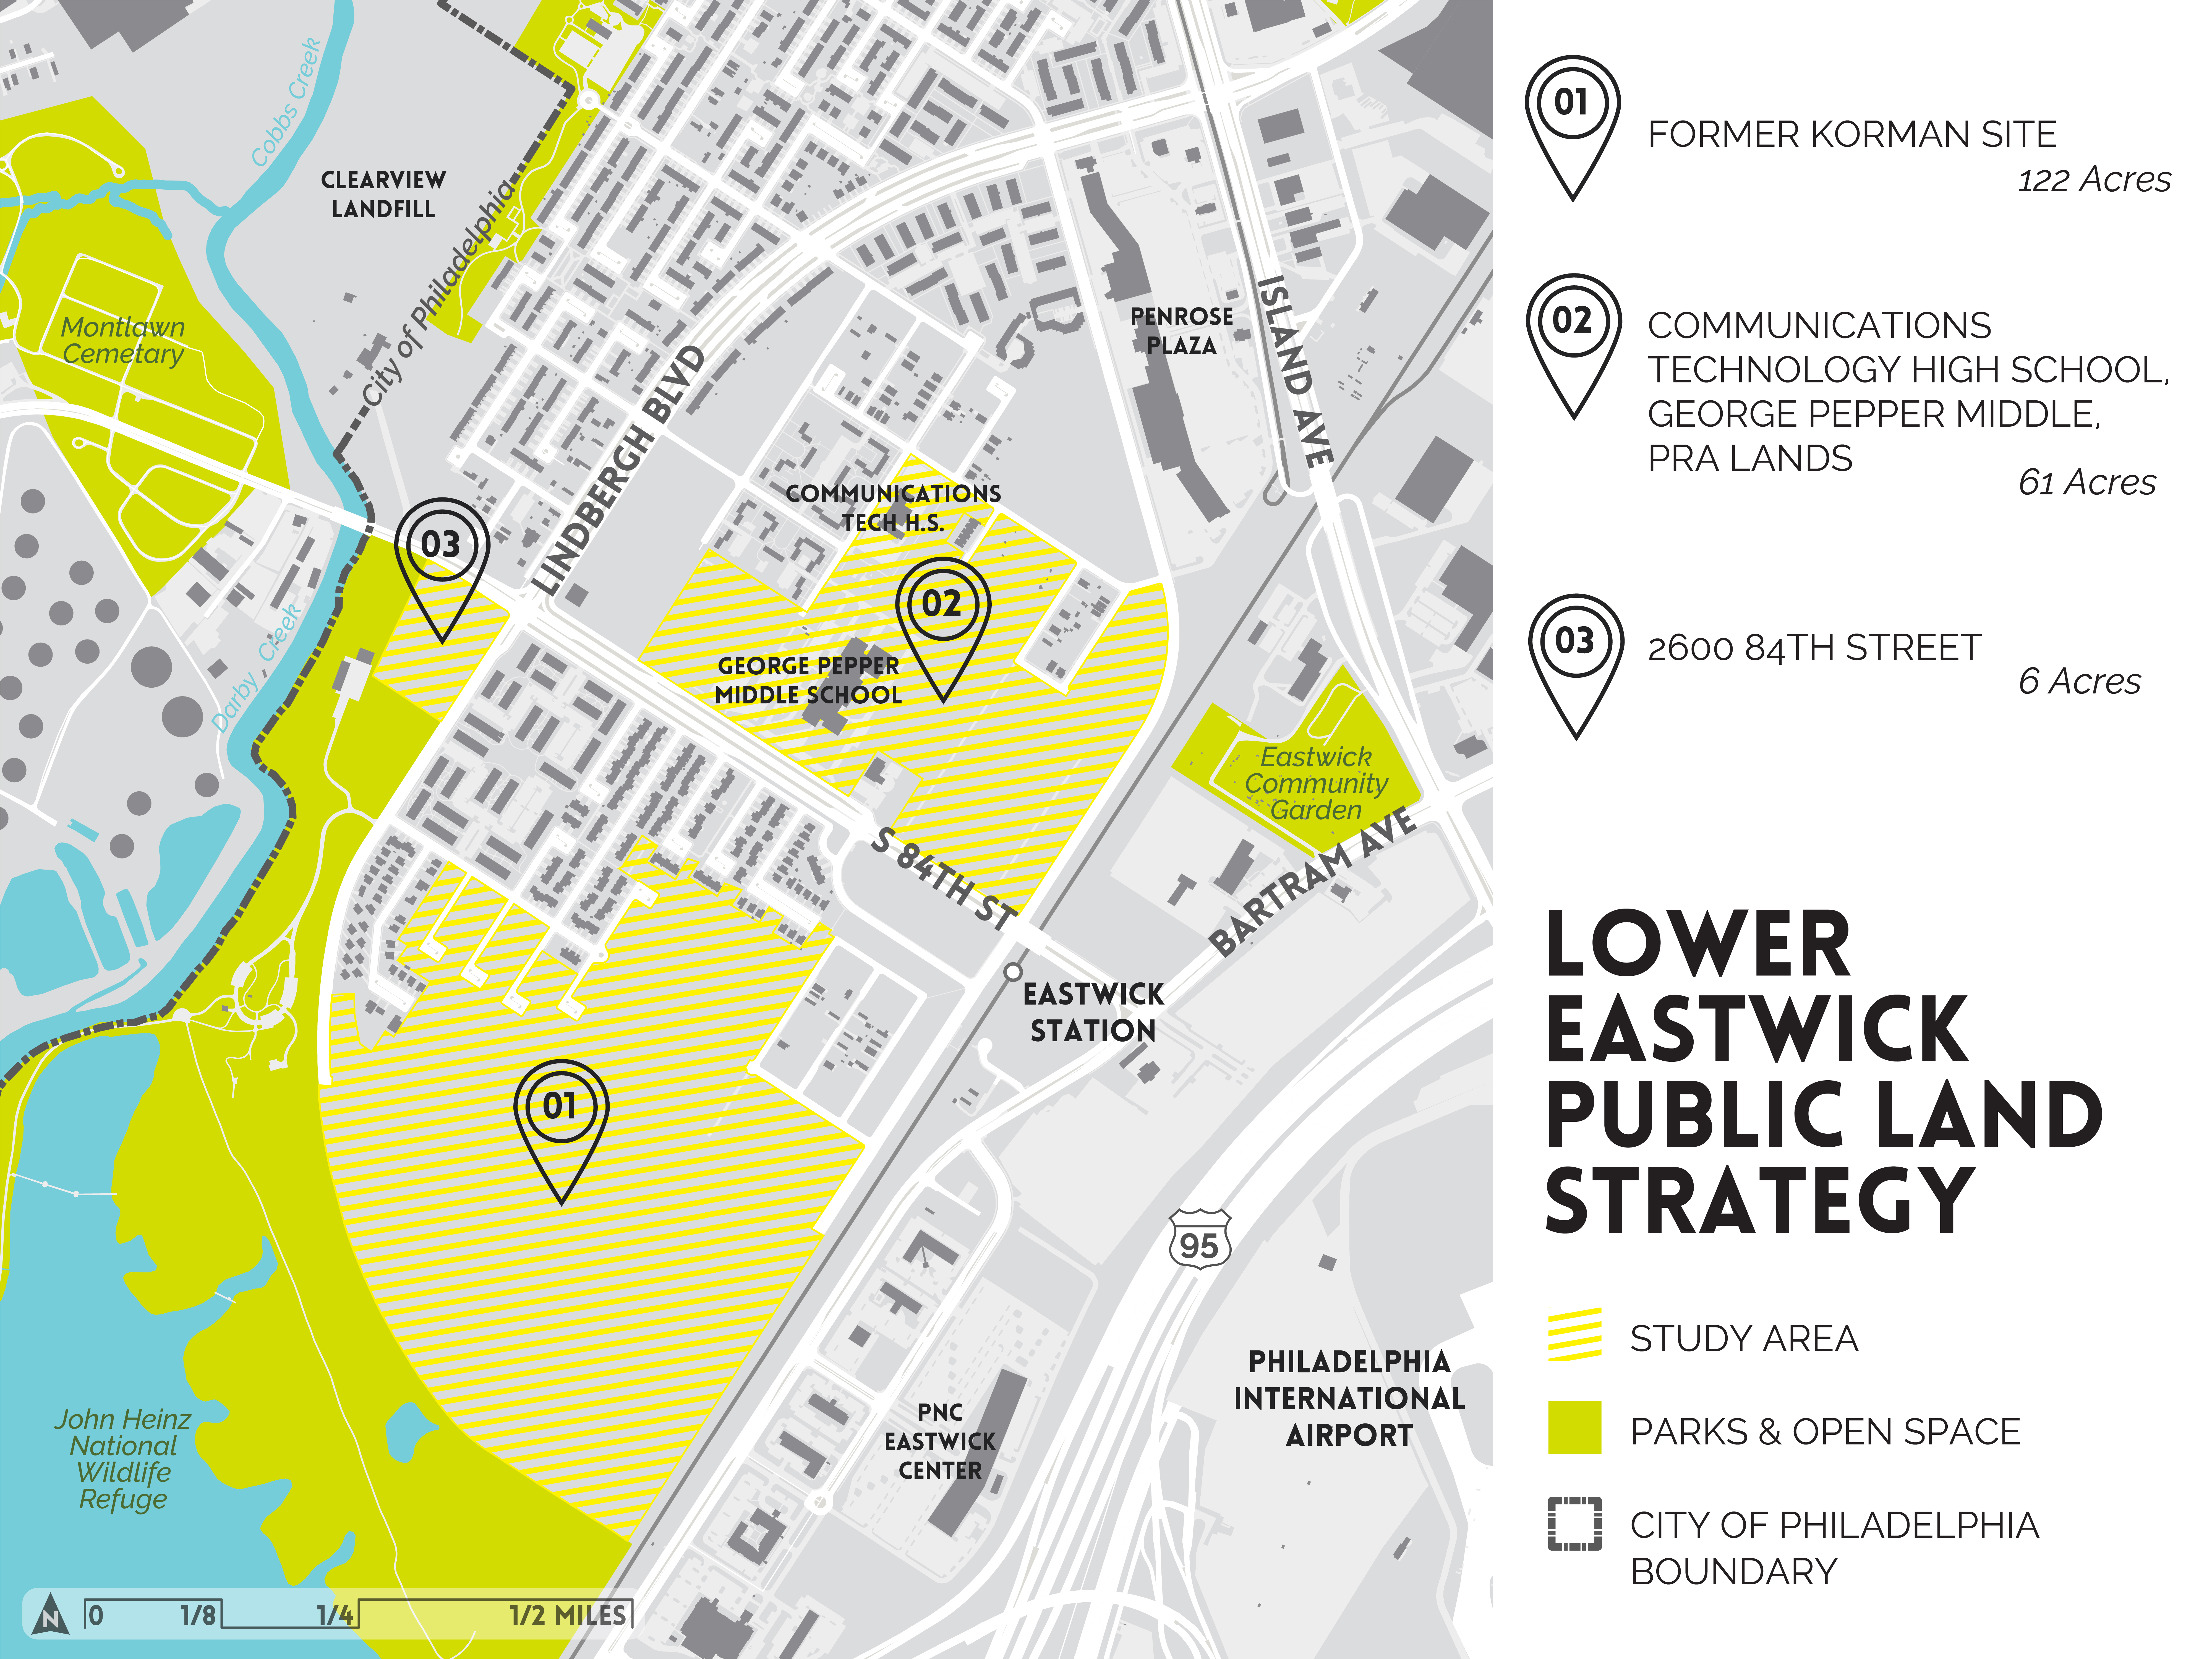 Lower Eastwick Public Land Strategy